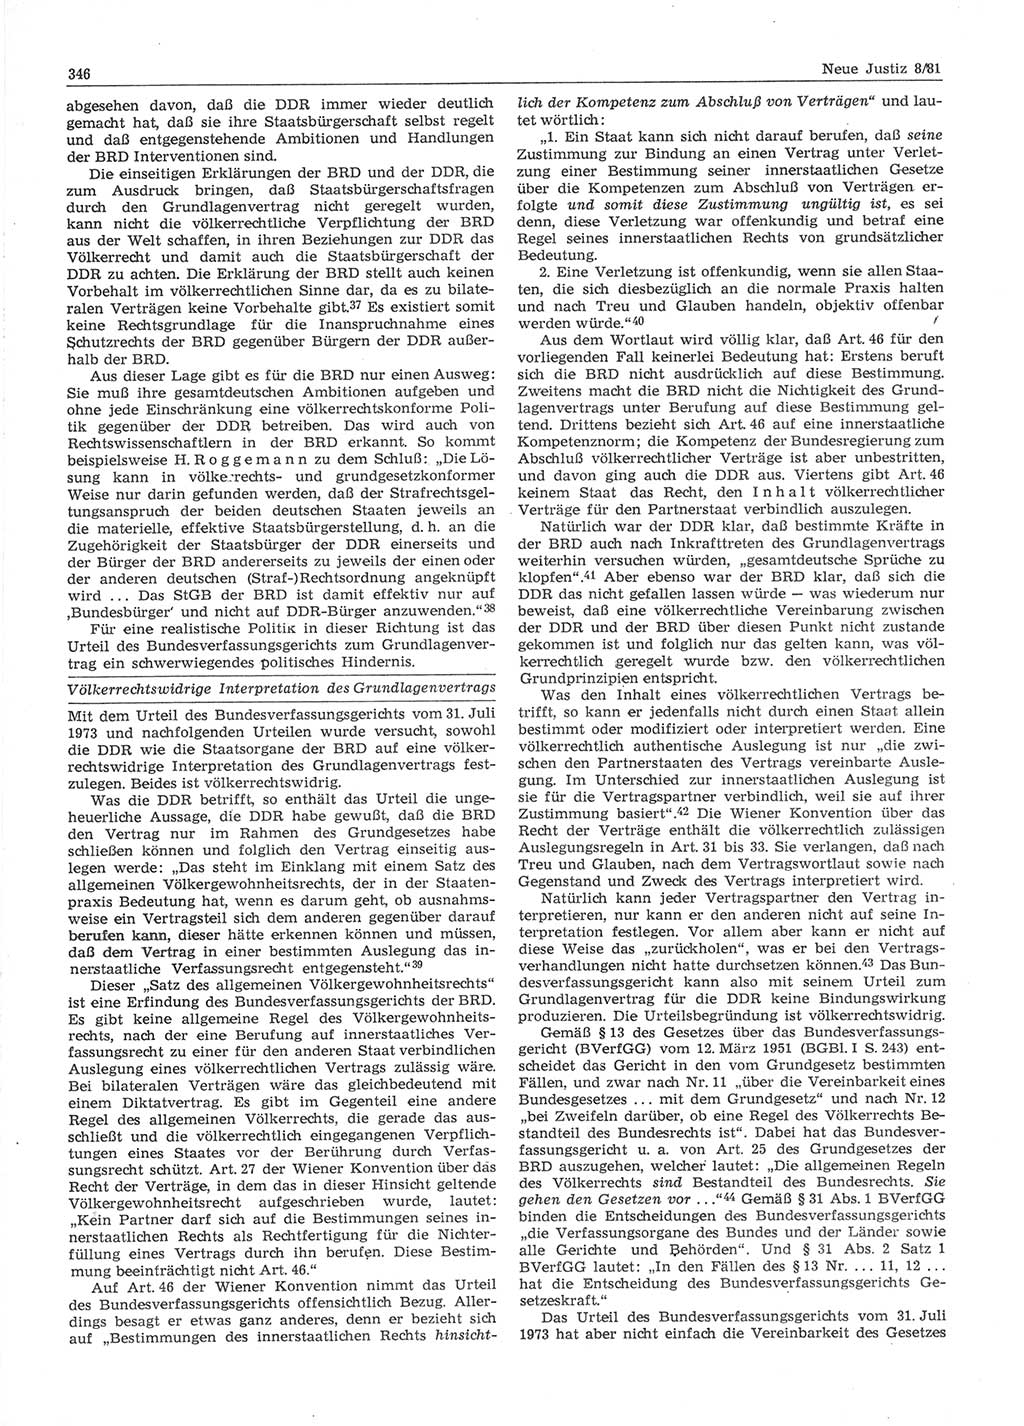 Neue Justiz (NJ), Zeitschrift für sozialistisches Recht und Gesetzlichkeit [Deutsche Demokratische Republik (DDR)], 35. Jahrgang 1981, Seite 346 (NJ DDR 1981, S. 346)